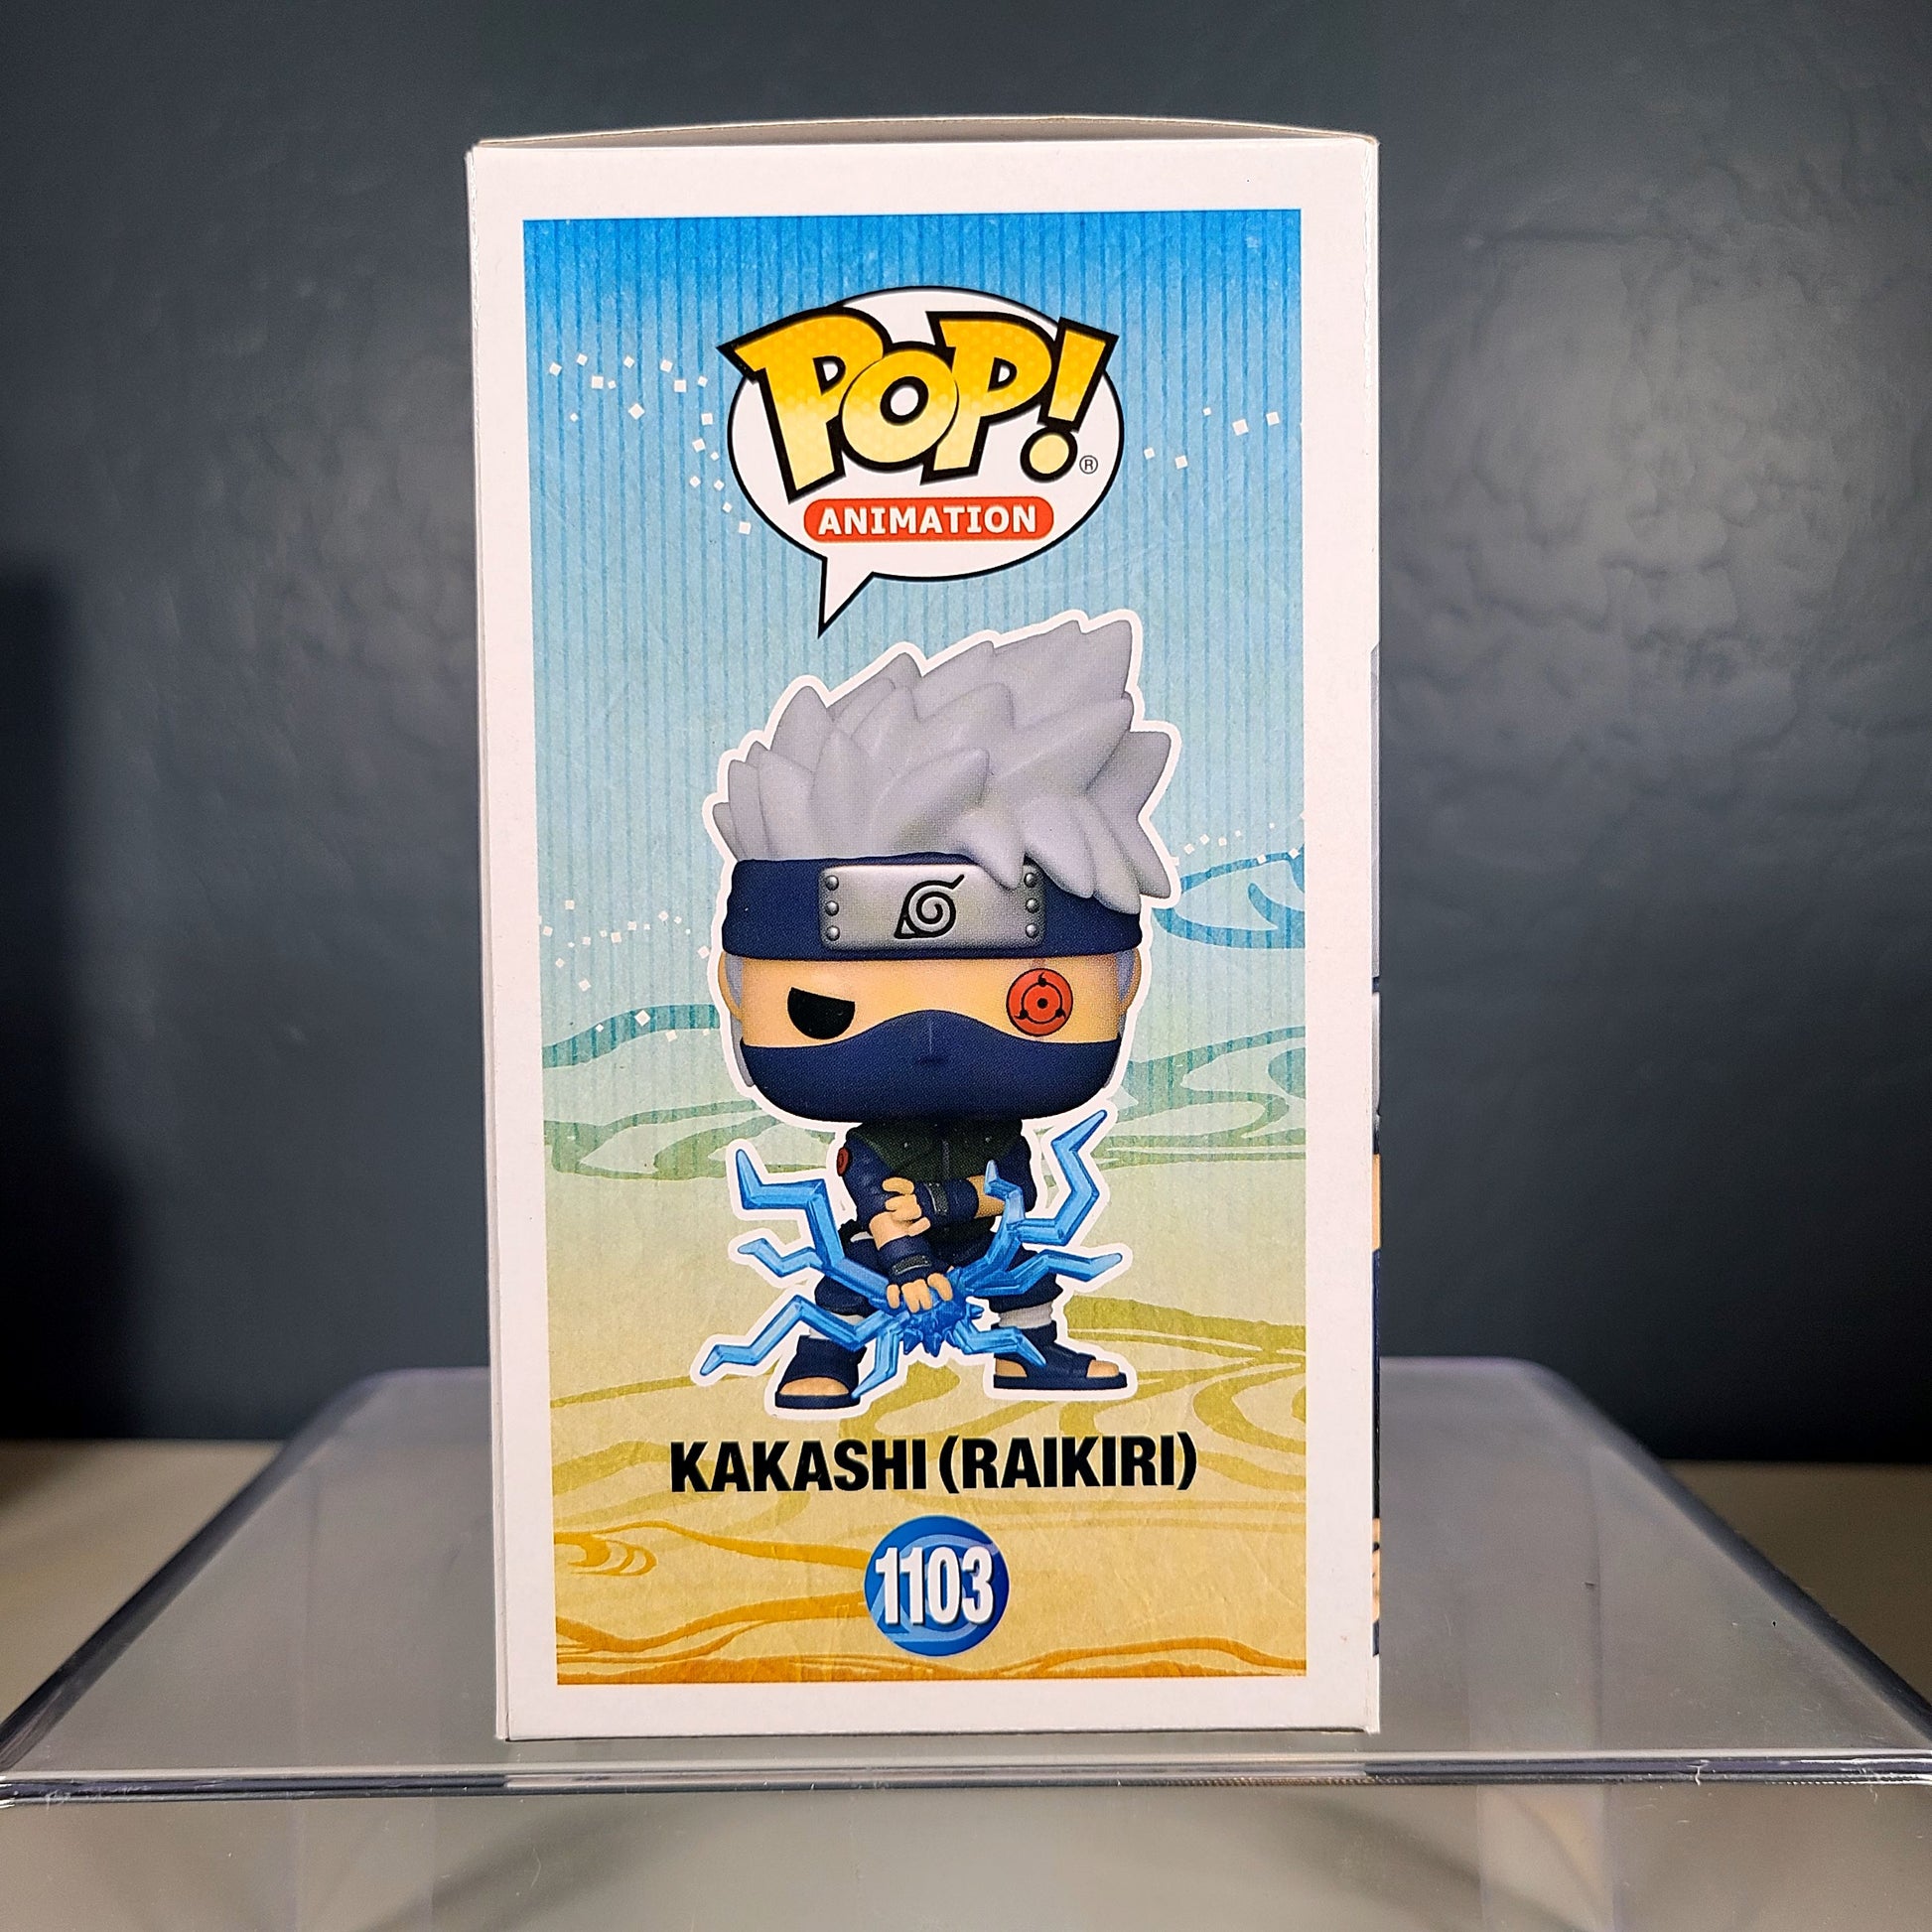 Funko Pop! Animation #1103 - Kakashi (Raikiri) - Naruto Shippuden